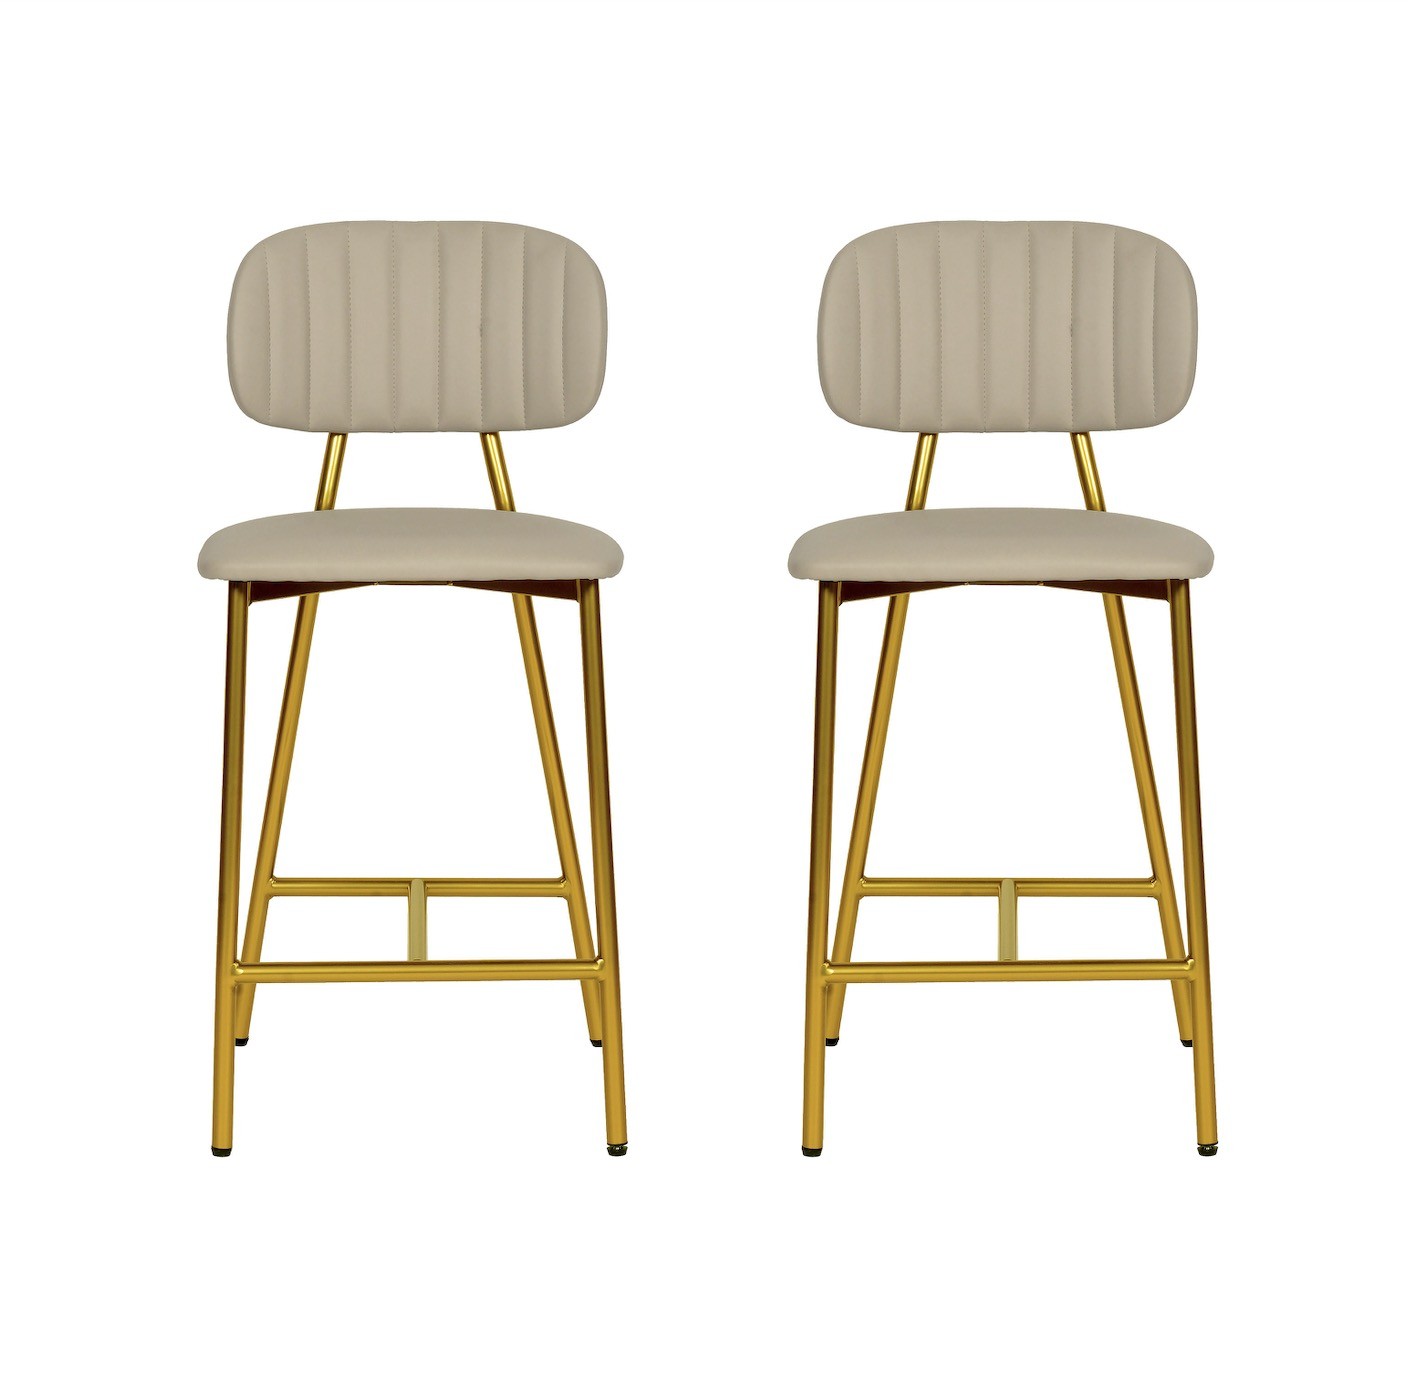 изготовленные на заказ барные стулья